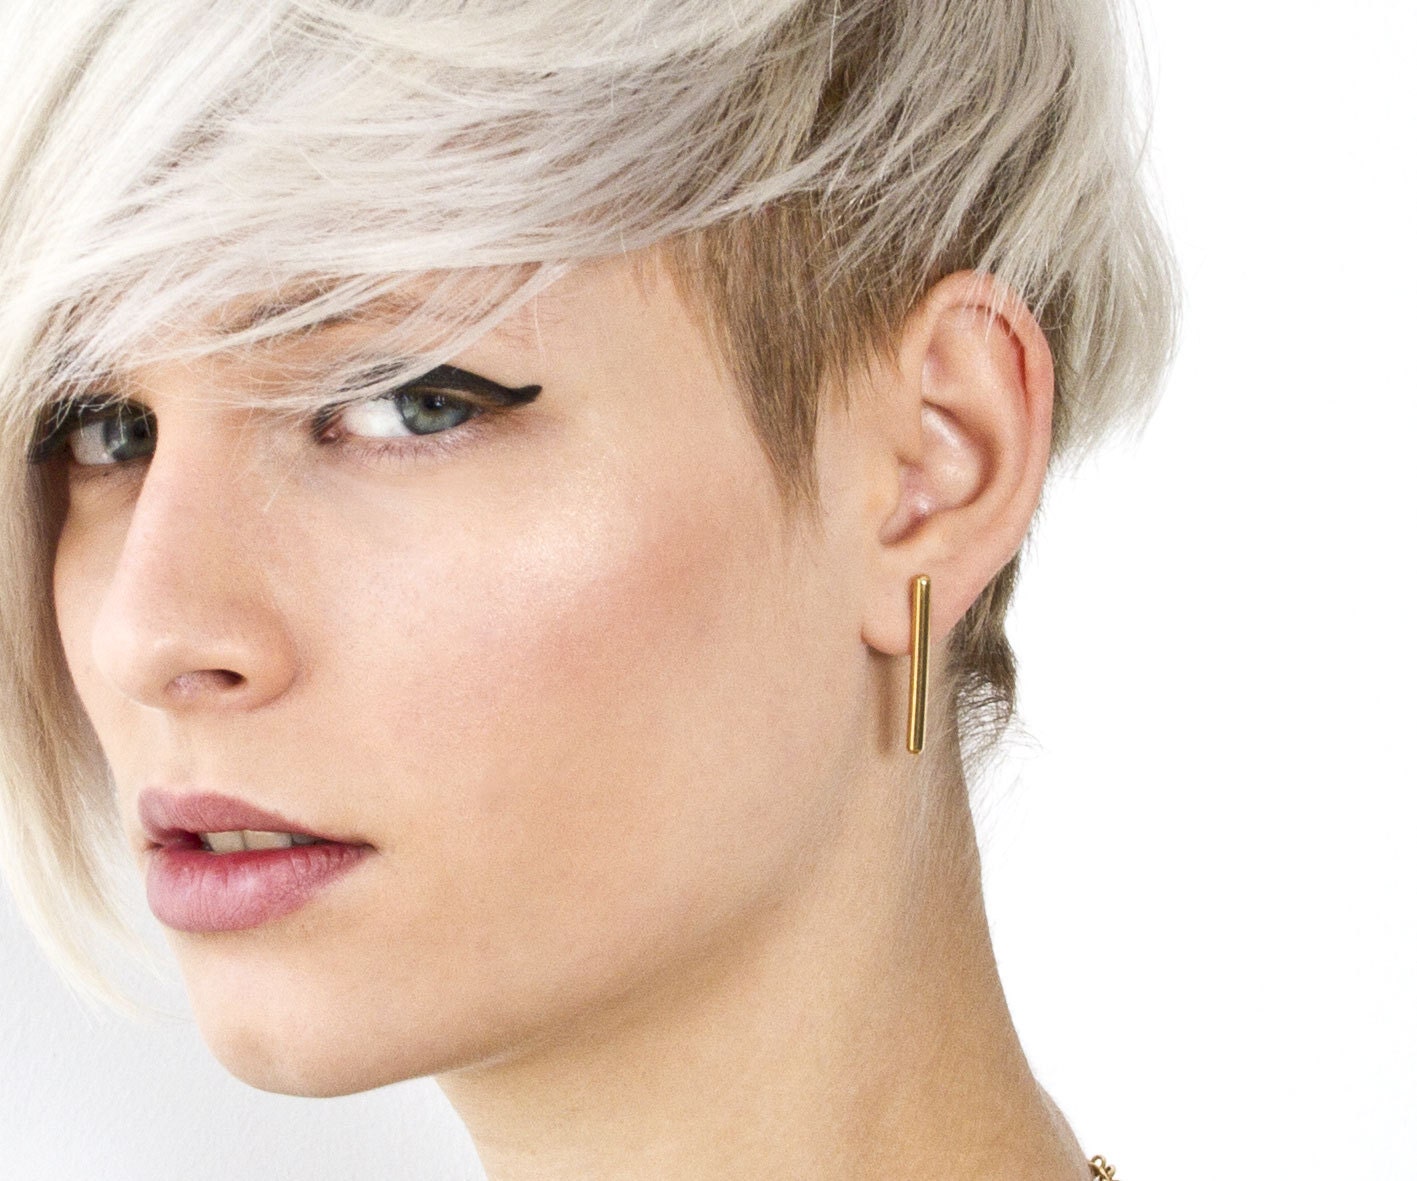 Line earrings in gold or Sterling silver, bar stud  Geometric post earrings, minimalist jewelry